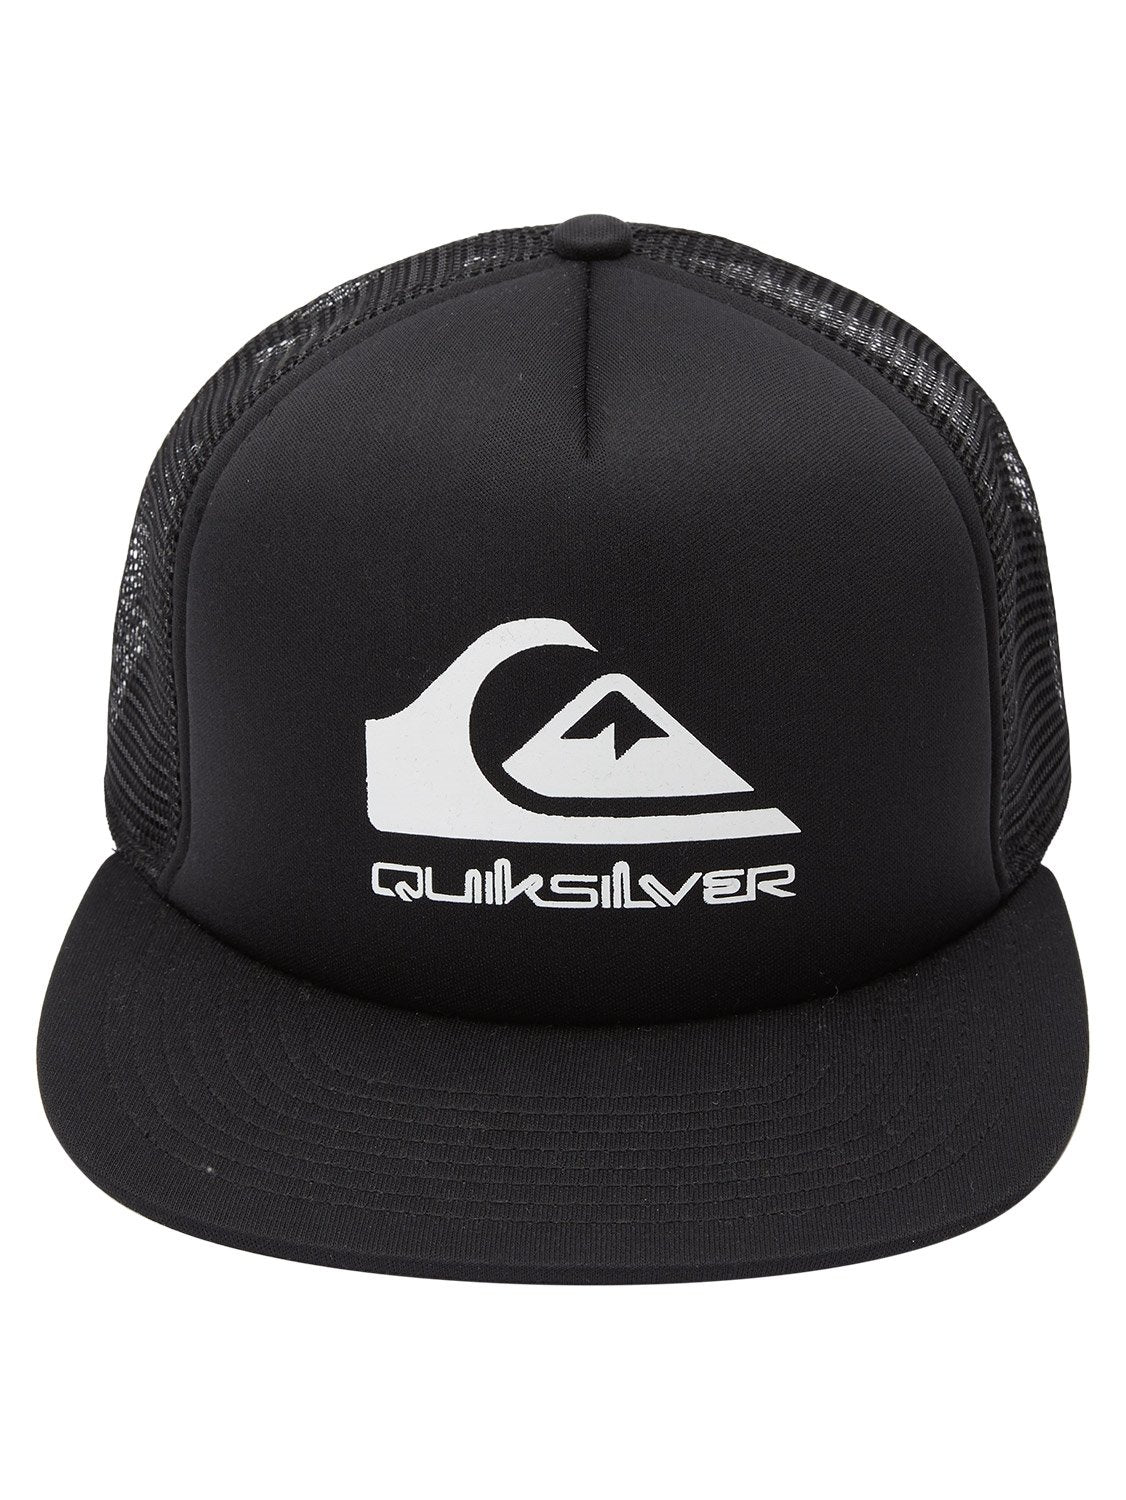 Quiksilver Men's Foamslayer Cap